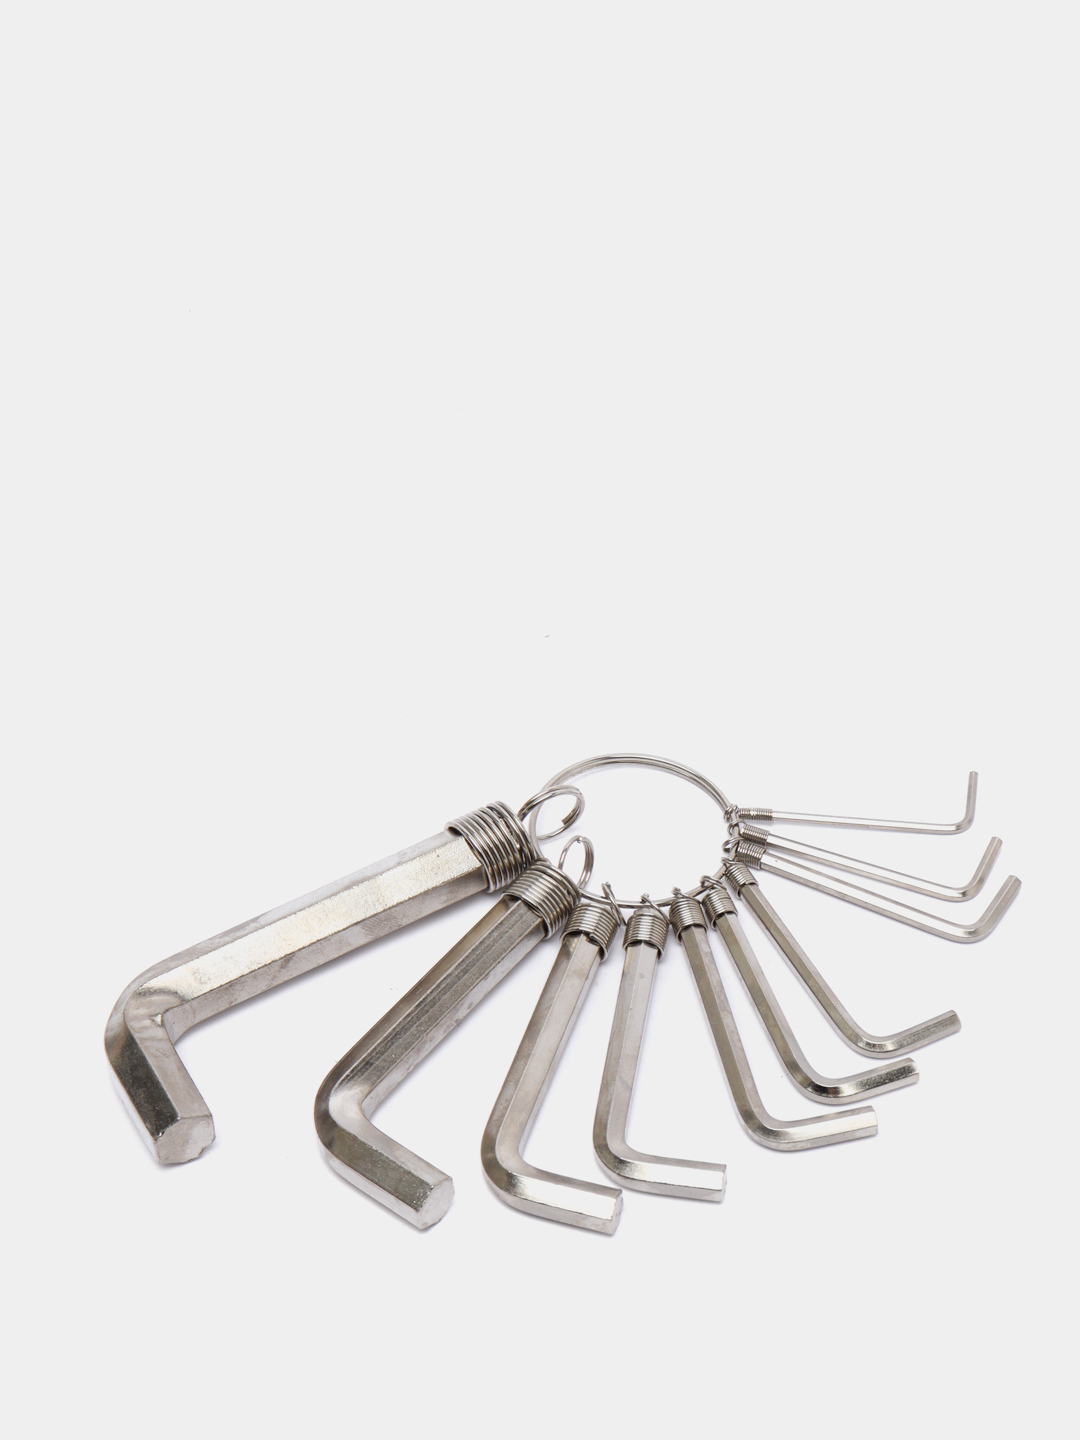 Набор ключей SPARTA.Шестигранники, 1.5-10 мм, 10 штук, сталь за 249 .